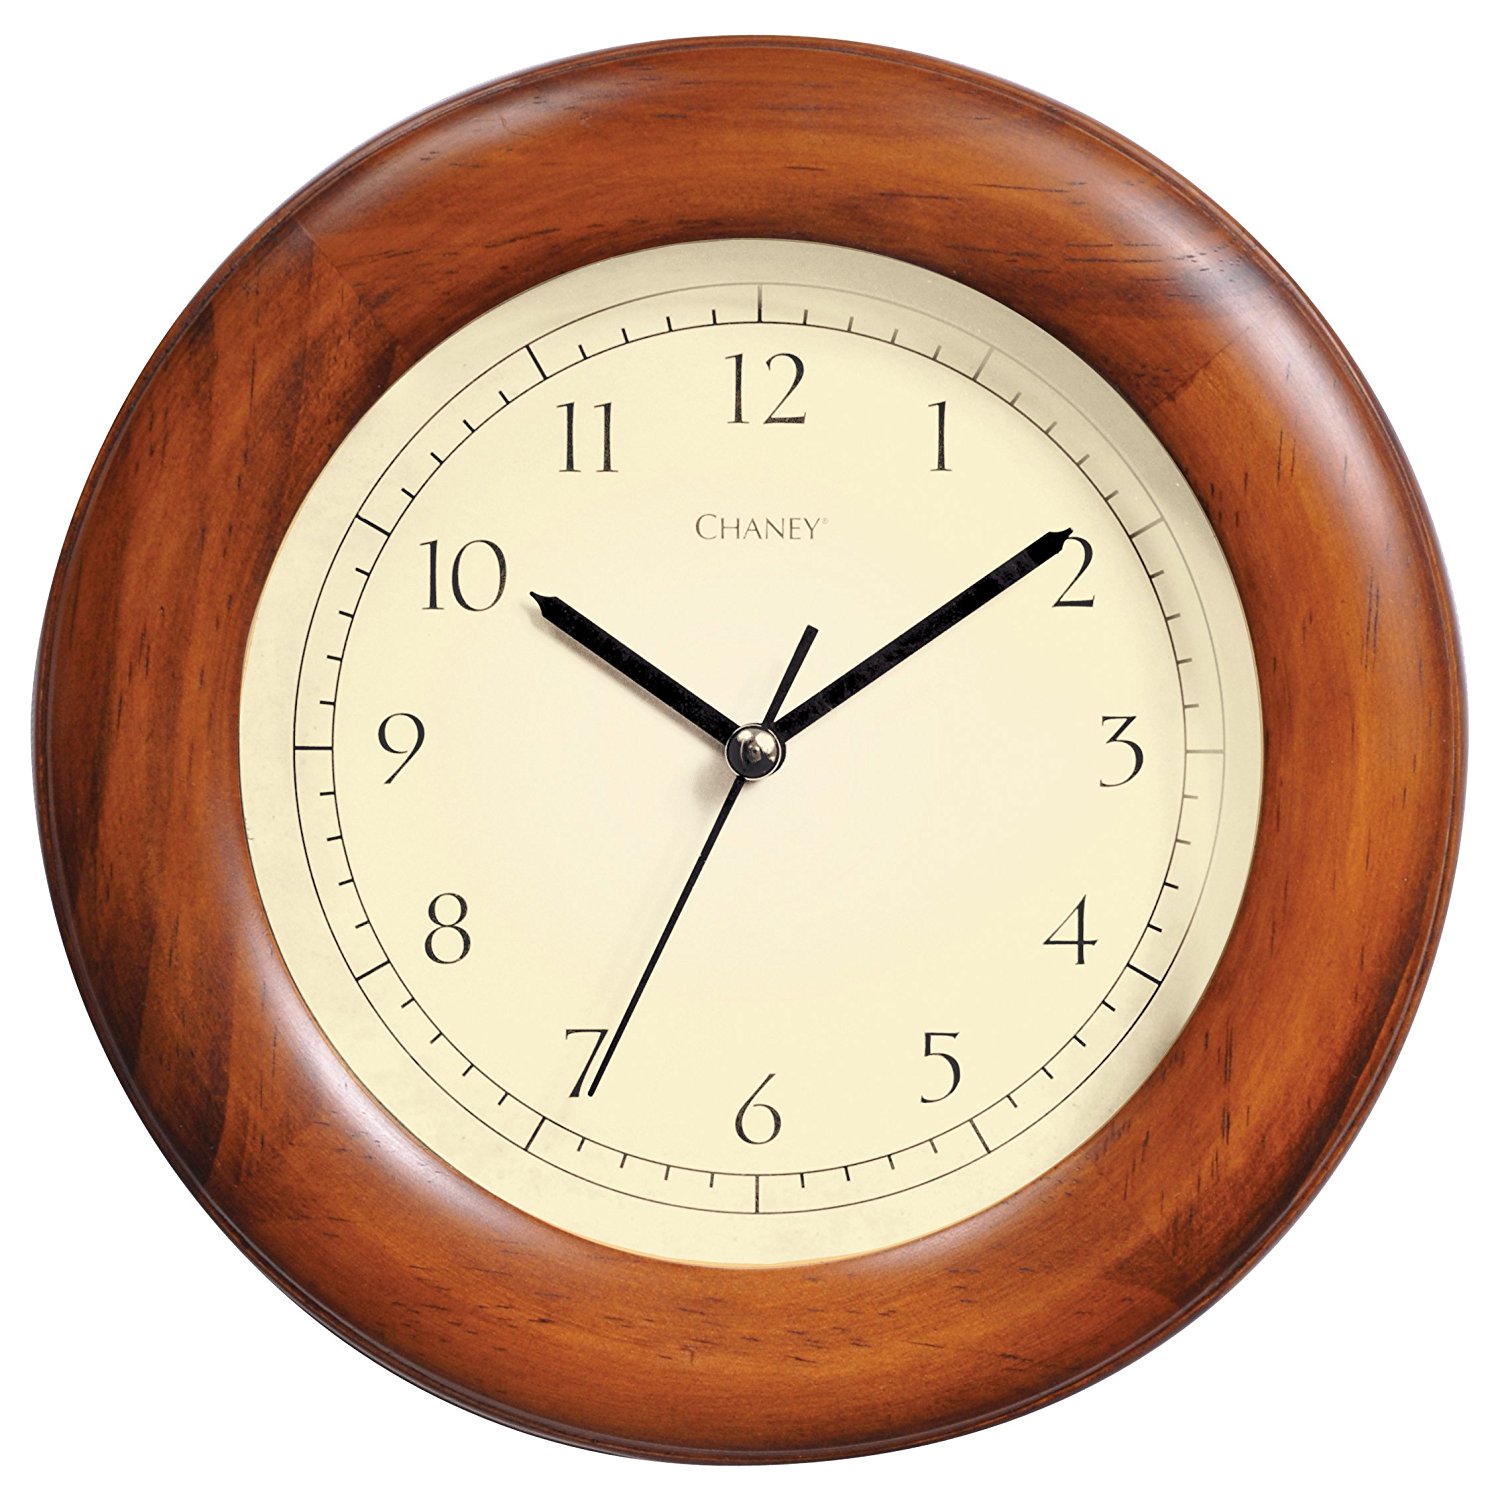 Chaney 75171 Poplar Wood Wall Clock, 8"